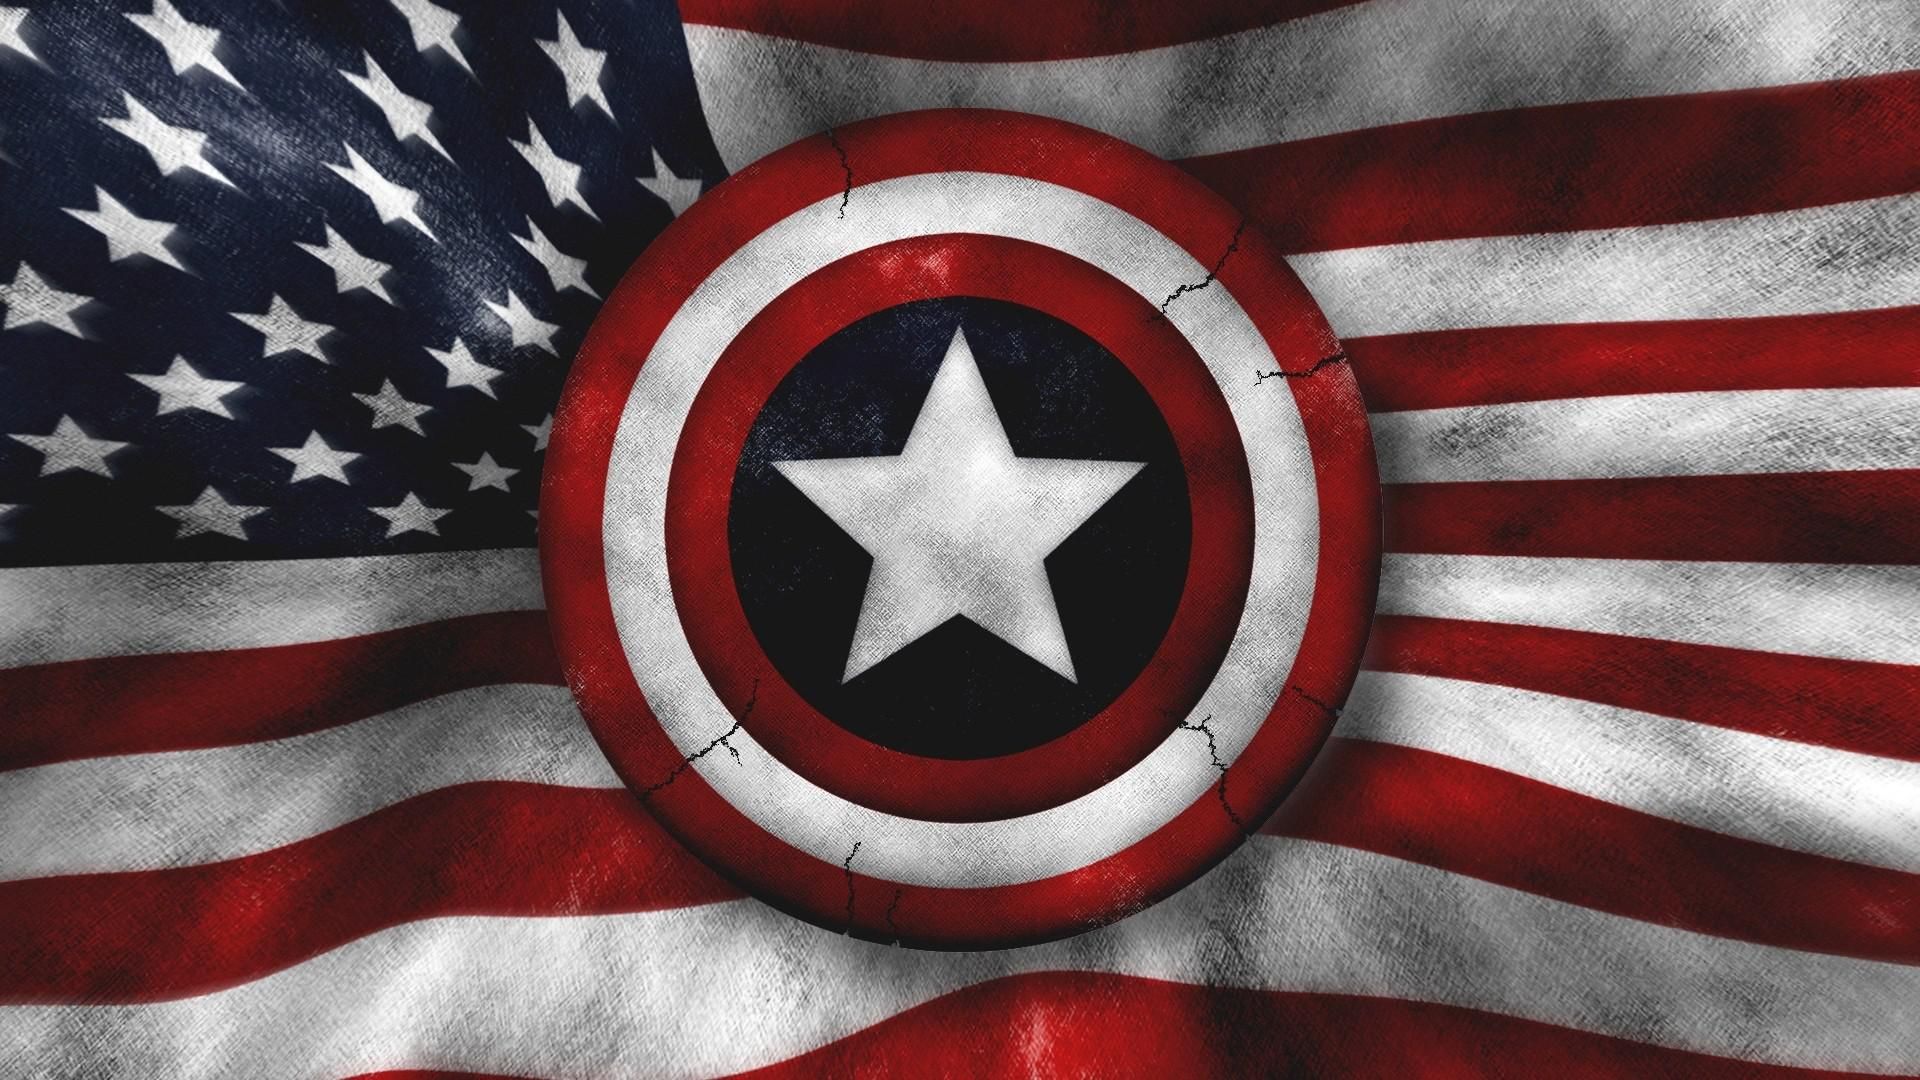 Captain America; Super Soldier. Captain america wallpaper, Captain america shield wallpaper, Captain america shield